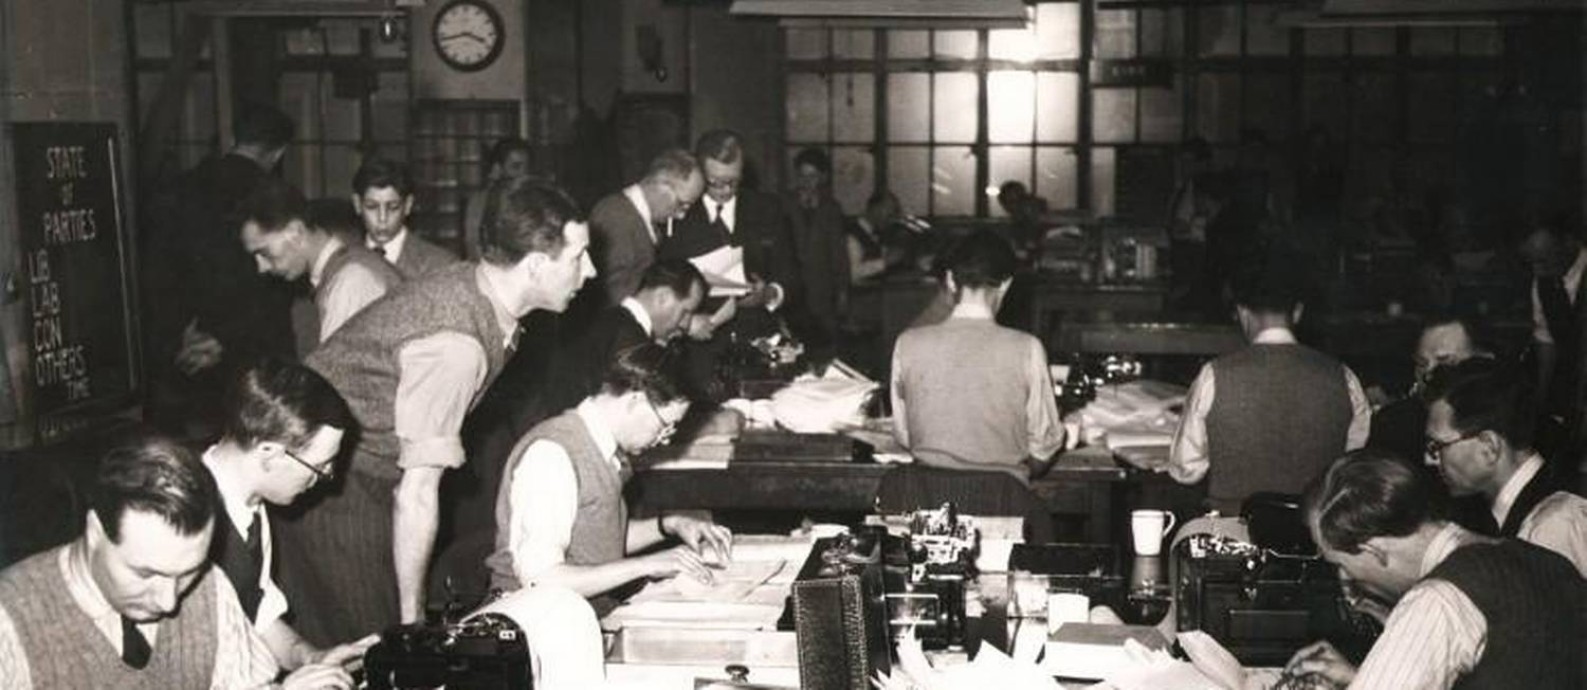 Uma foto do arquivo da Reuters mostra jornalistas na redação da agência em 85 Fleet Street, Londres, durante a eleição geral britânica de 1950. Foto: Reuters